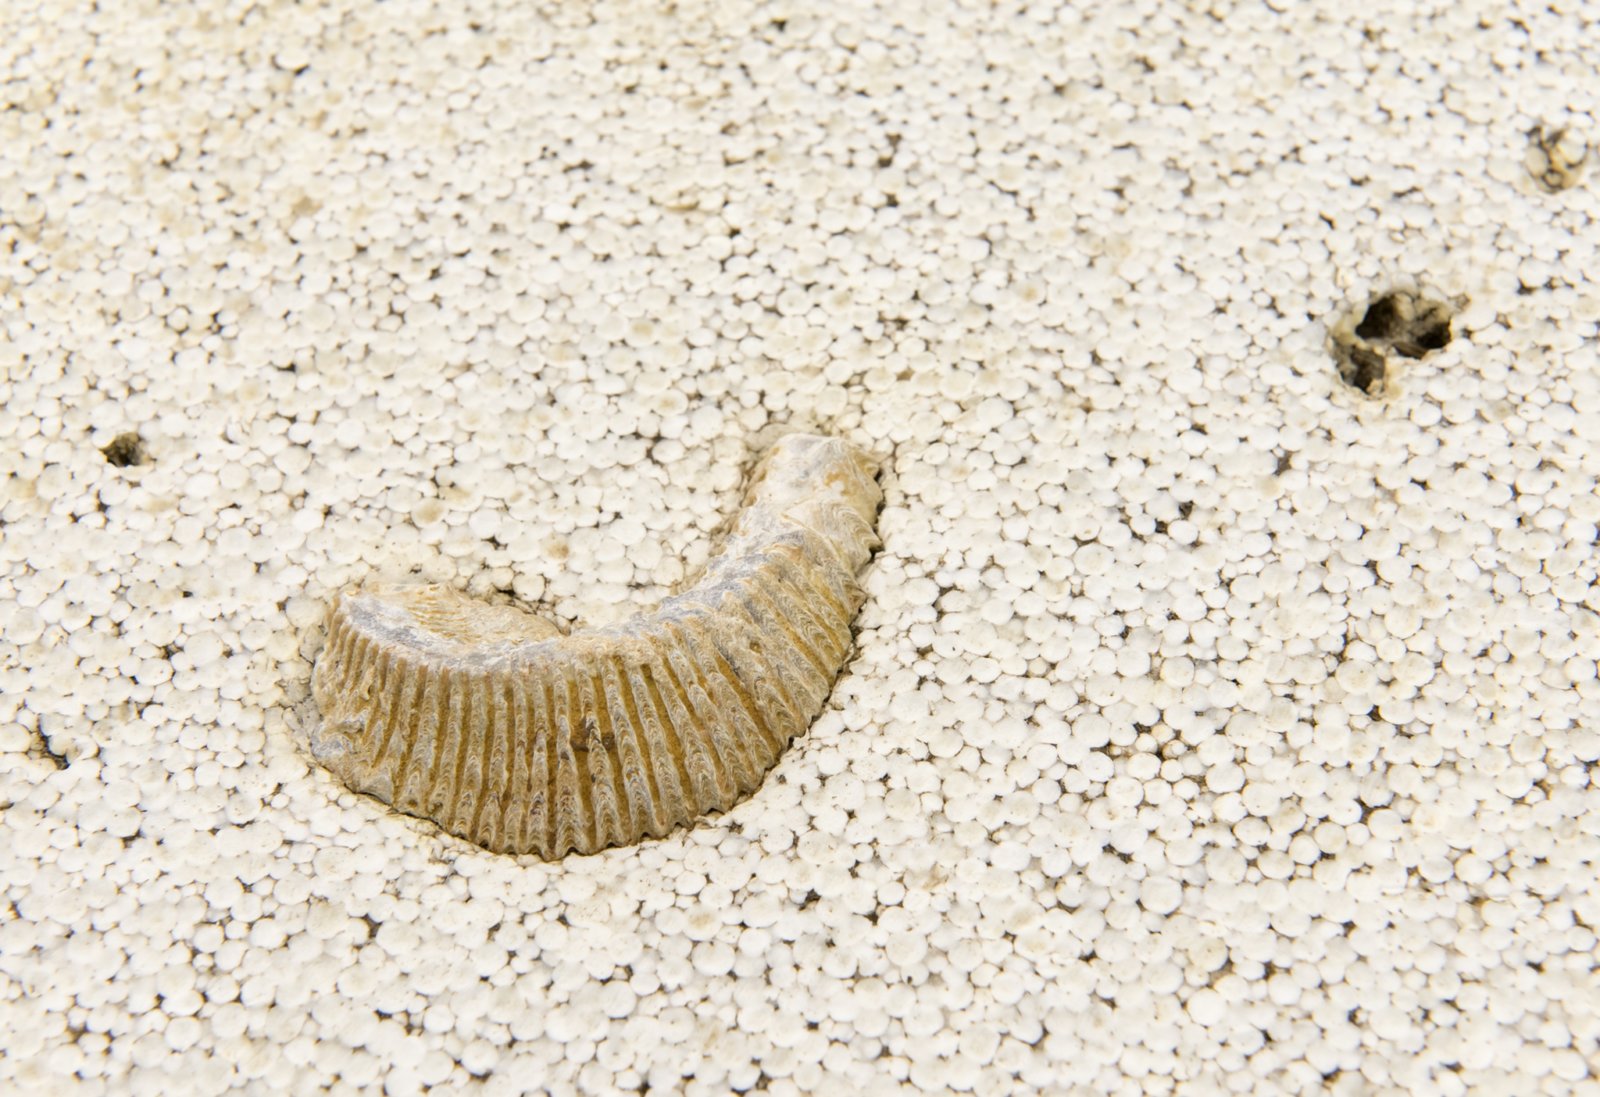 Ashes Withyman, Naturgemälde (detail), 2017, brachiopod, trilobite, zipper clam, styrofoam, 8 x 28 x 48 in. (20 x 72 x 122 cm)